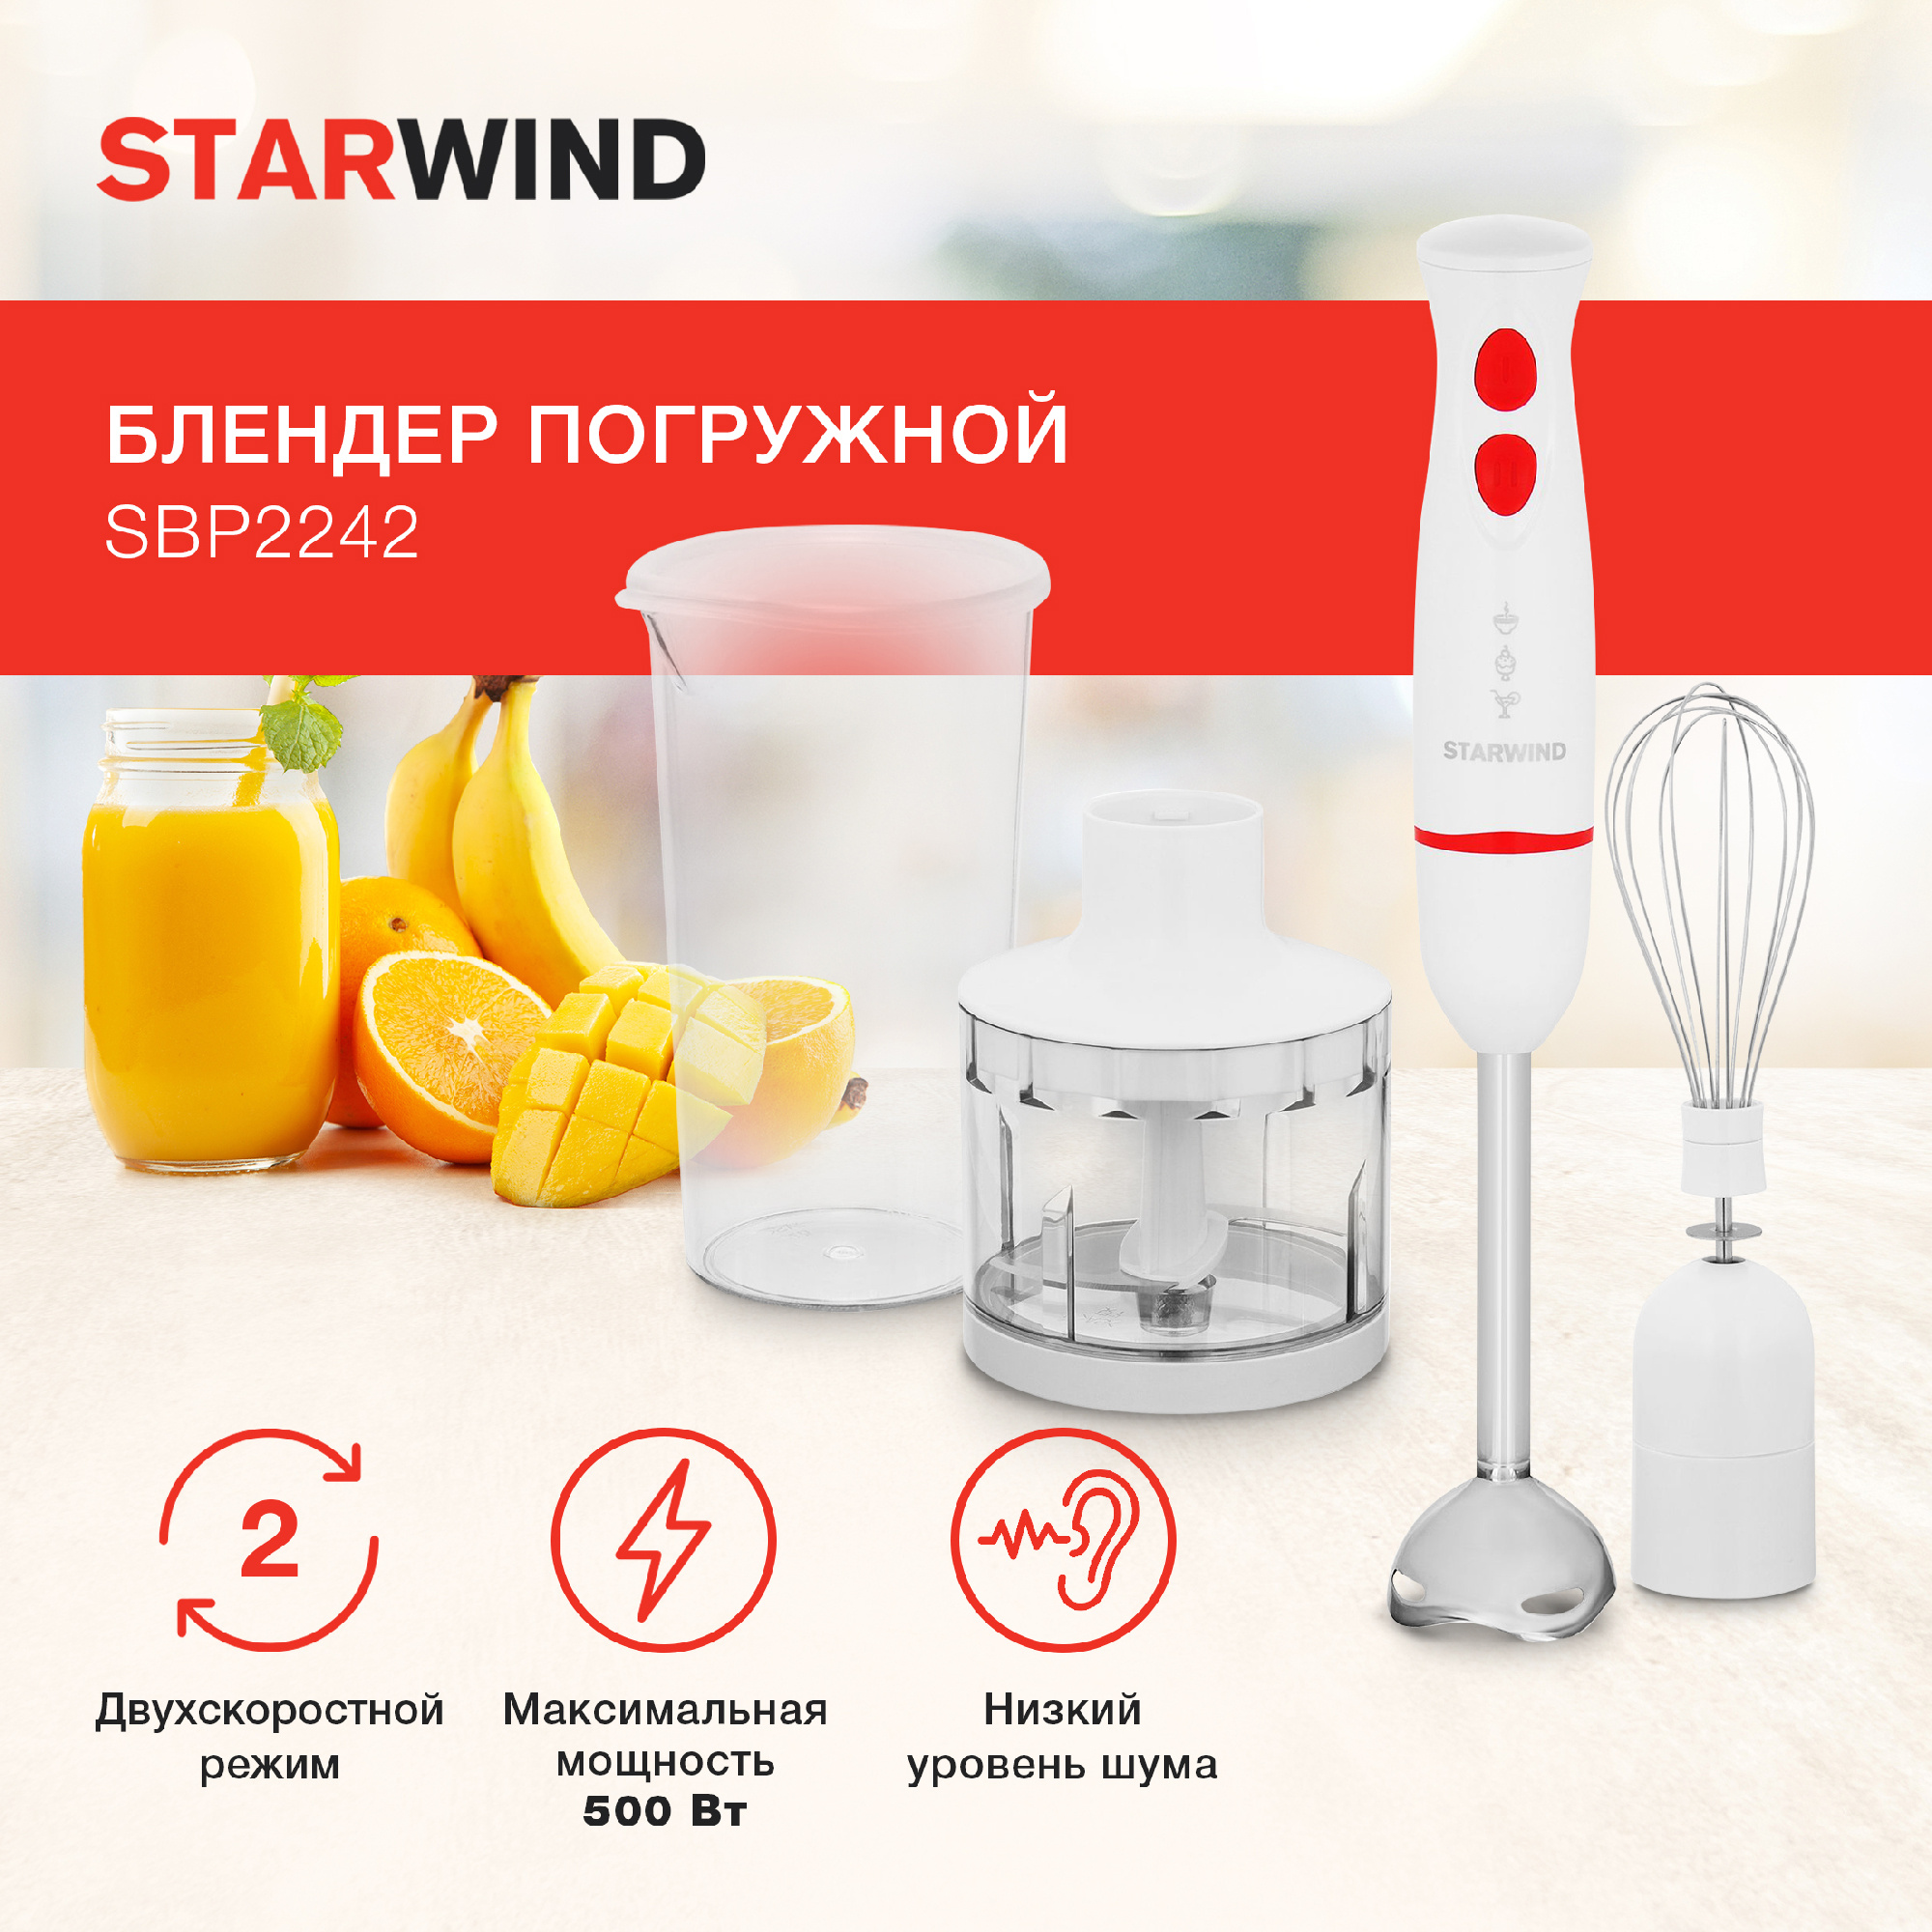 Блендер погружной Starwind SBP2242 белый/оранжевый от магазина Старвинд